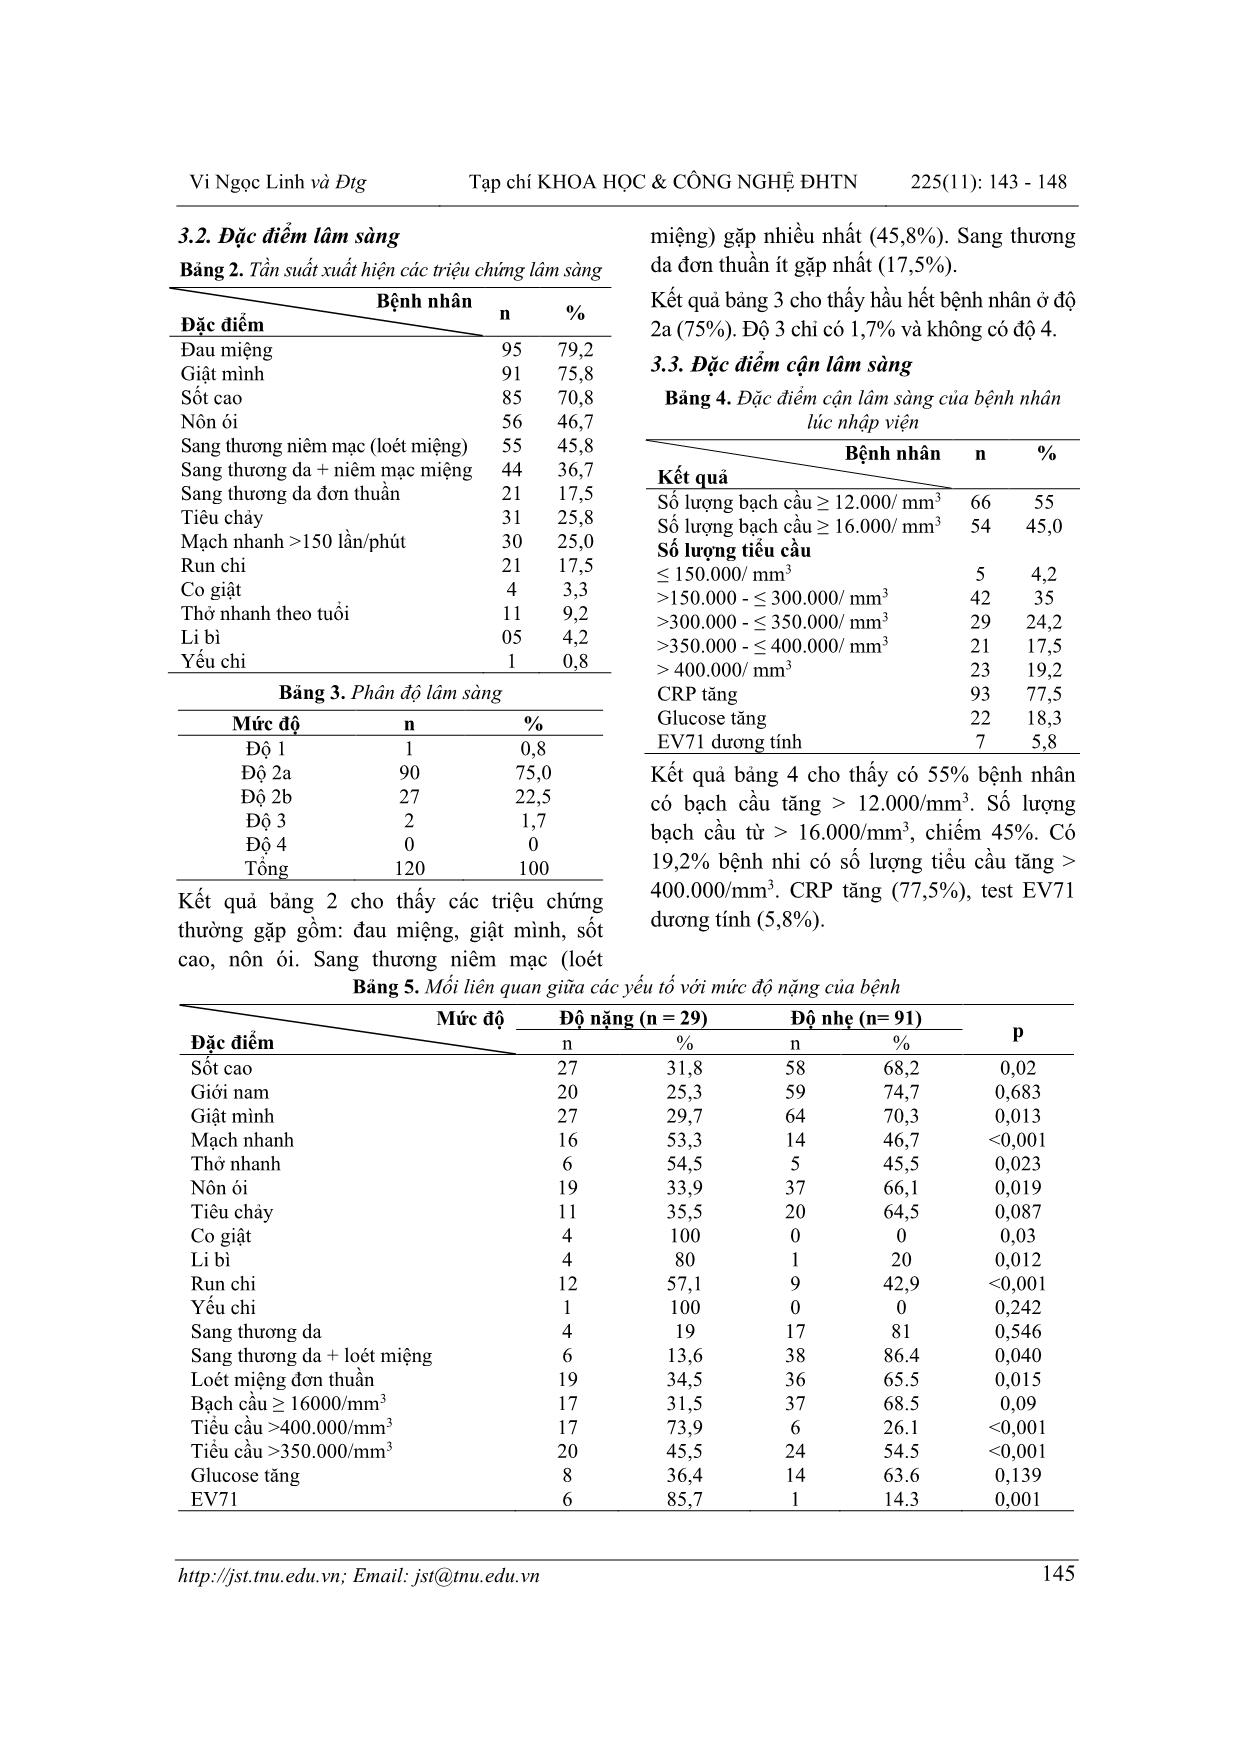 Đặc điểm và một số yếu tố liên quan đến mức độ nặng của bệnh tay chân miệng ở trẻ em tại bệnh viện Trung ương Thái Nguyên trang 3